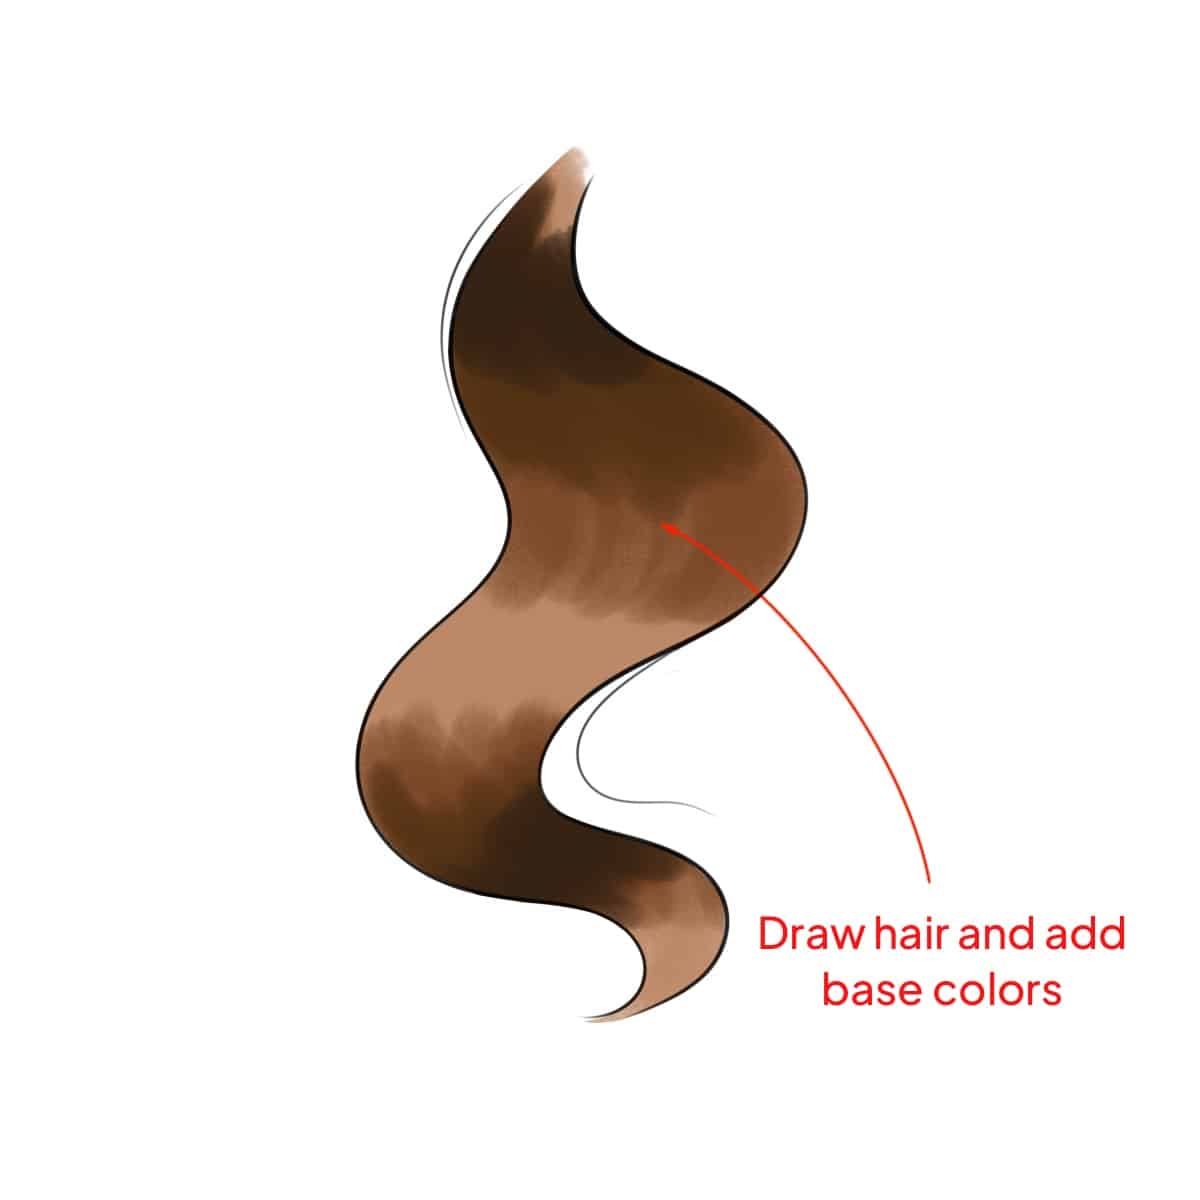 Hair strain drawn digitally in Procreate application